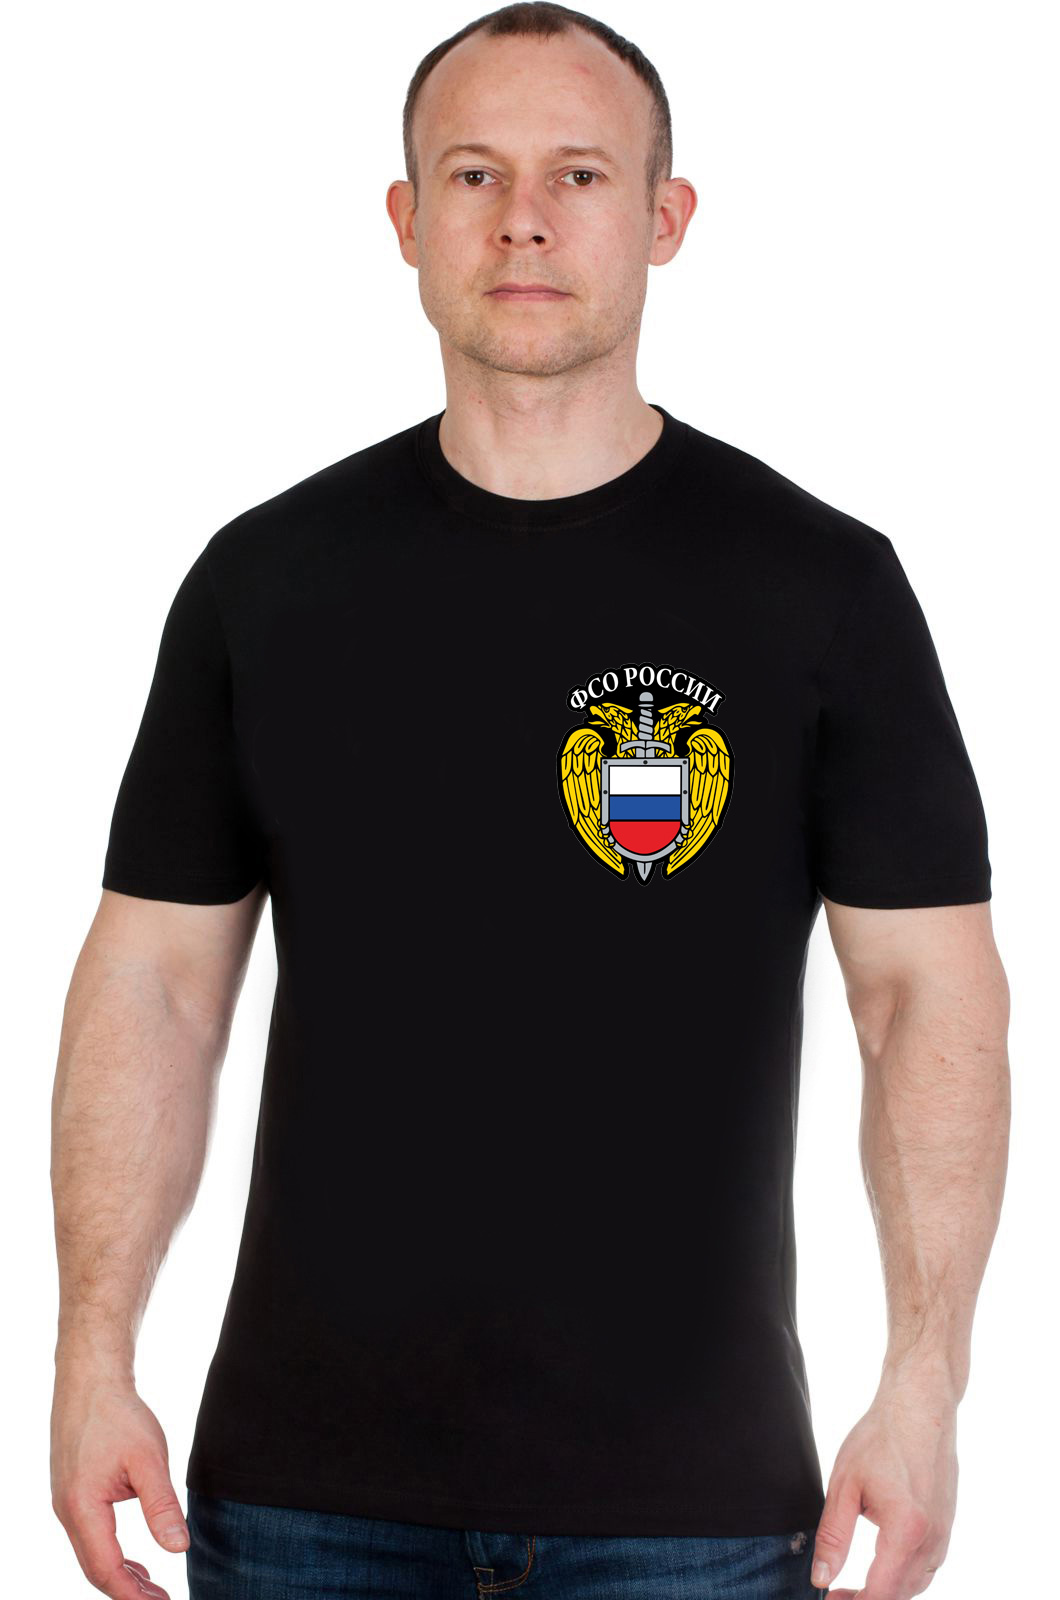 Классическая черная футболка с эмблемой ФСО 